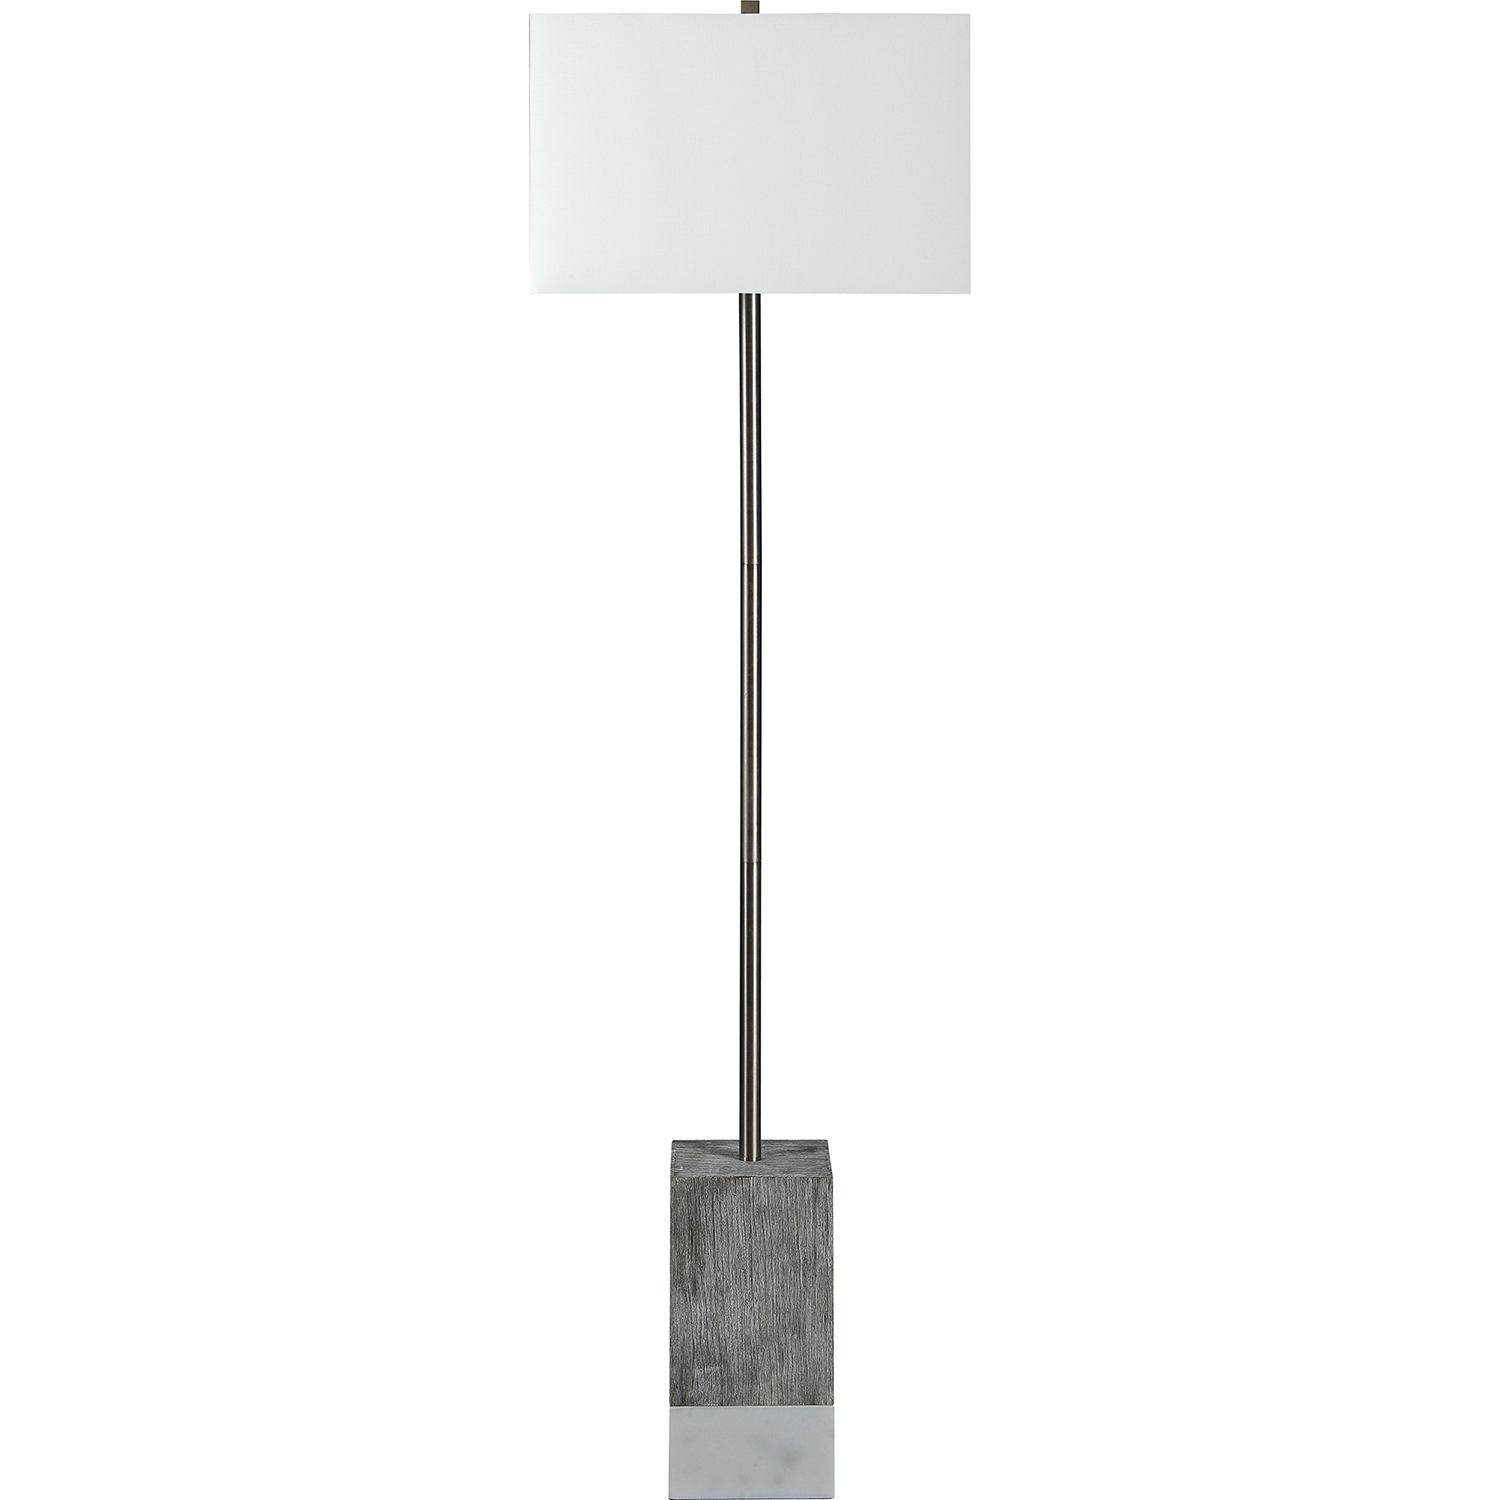 Ren-Wil Steward Floor Lamp - Satin Nickel/White Marble/White Wash